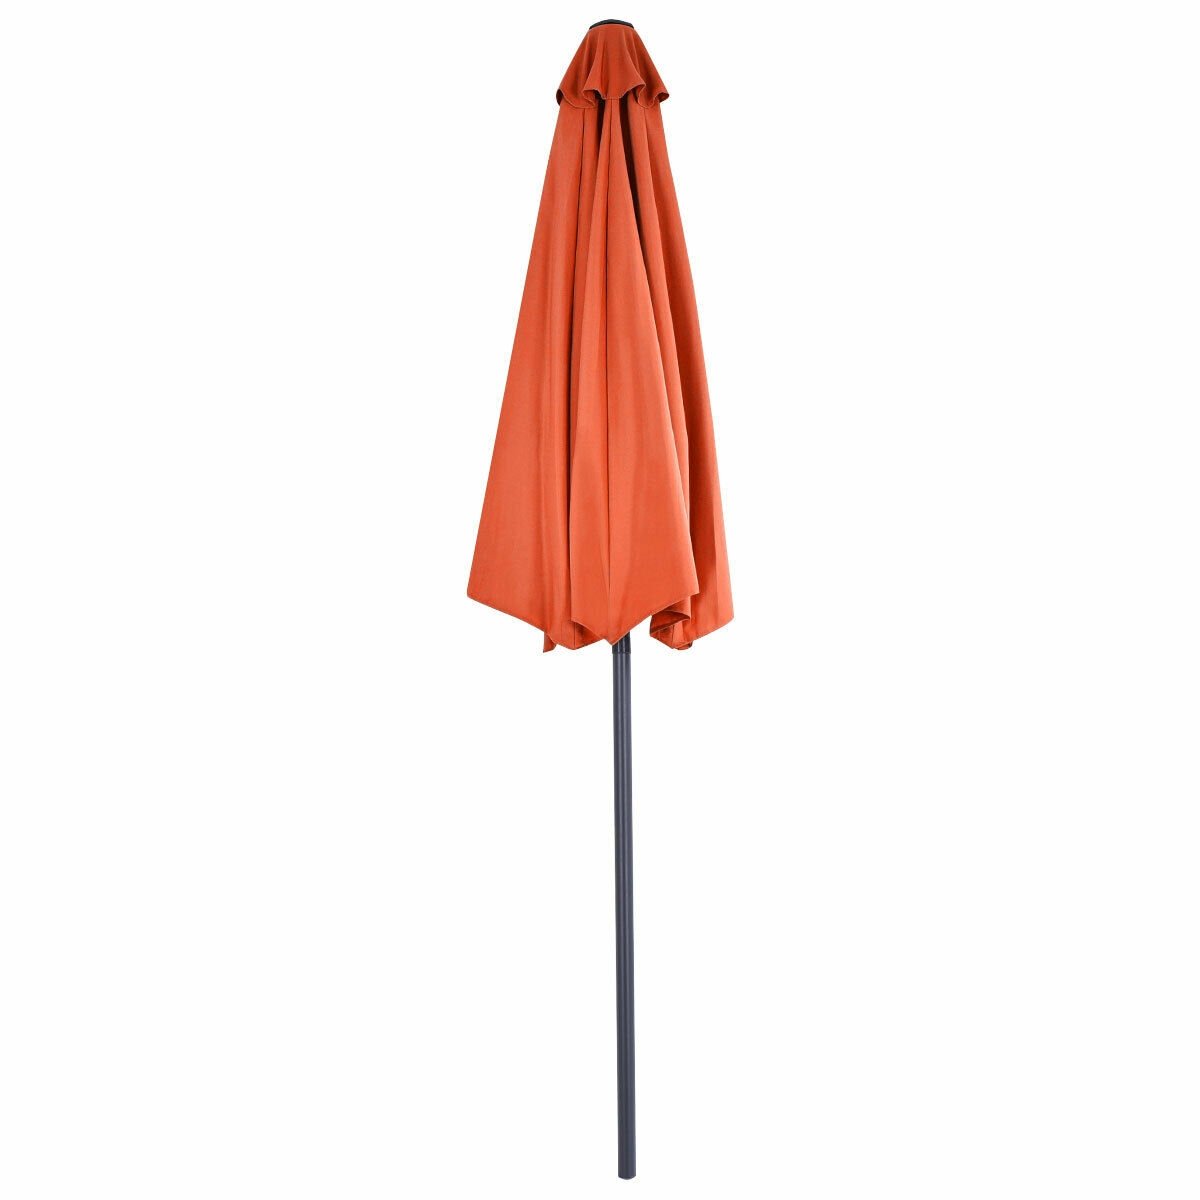 9Ft Patio Bistro Half Round Umbrella , Orange